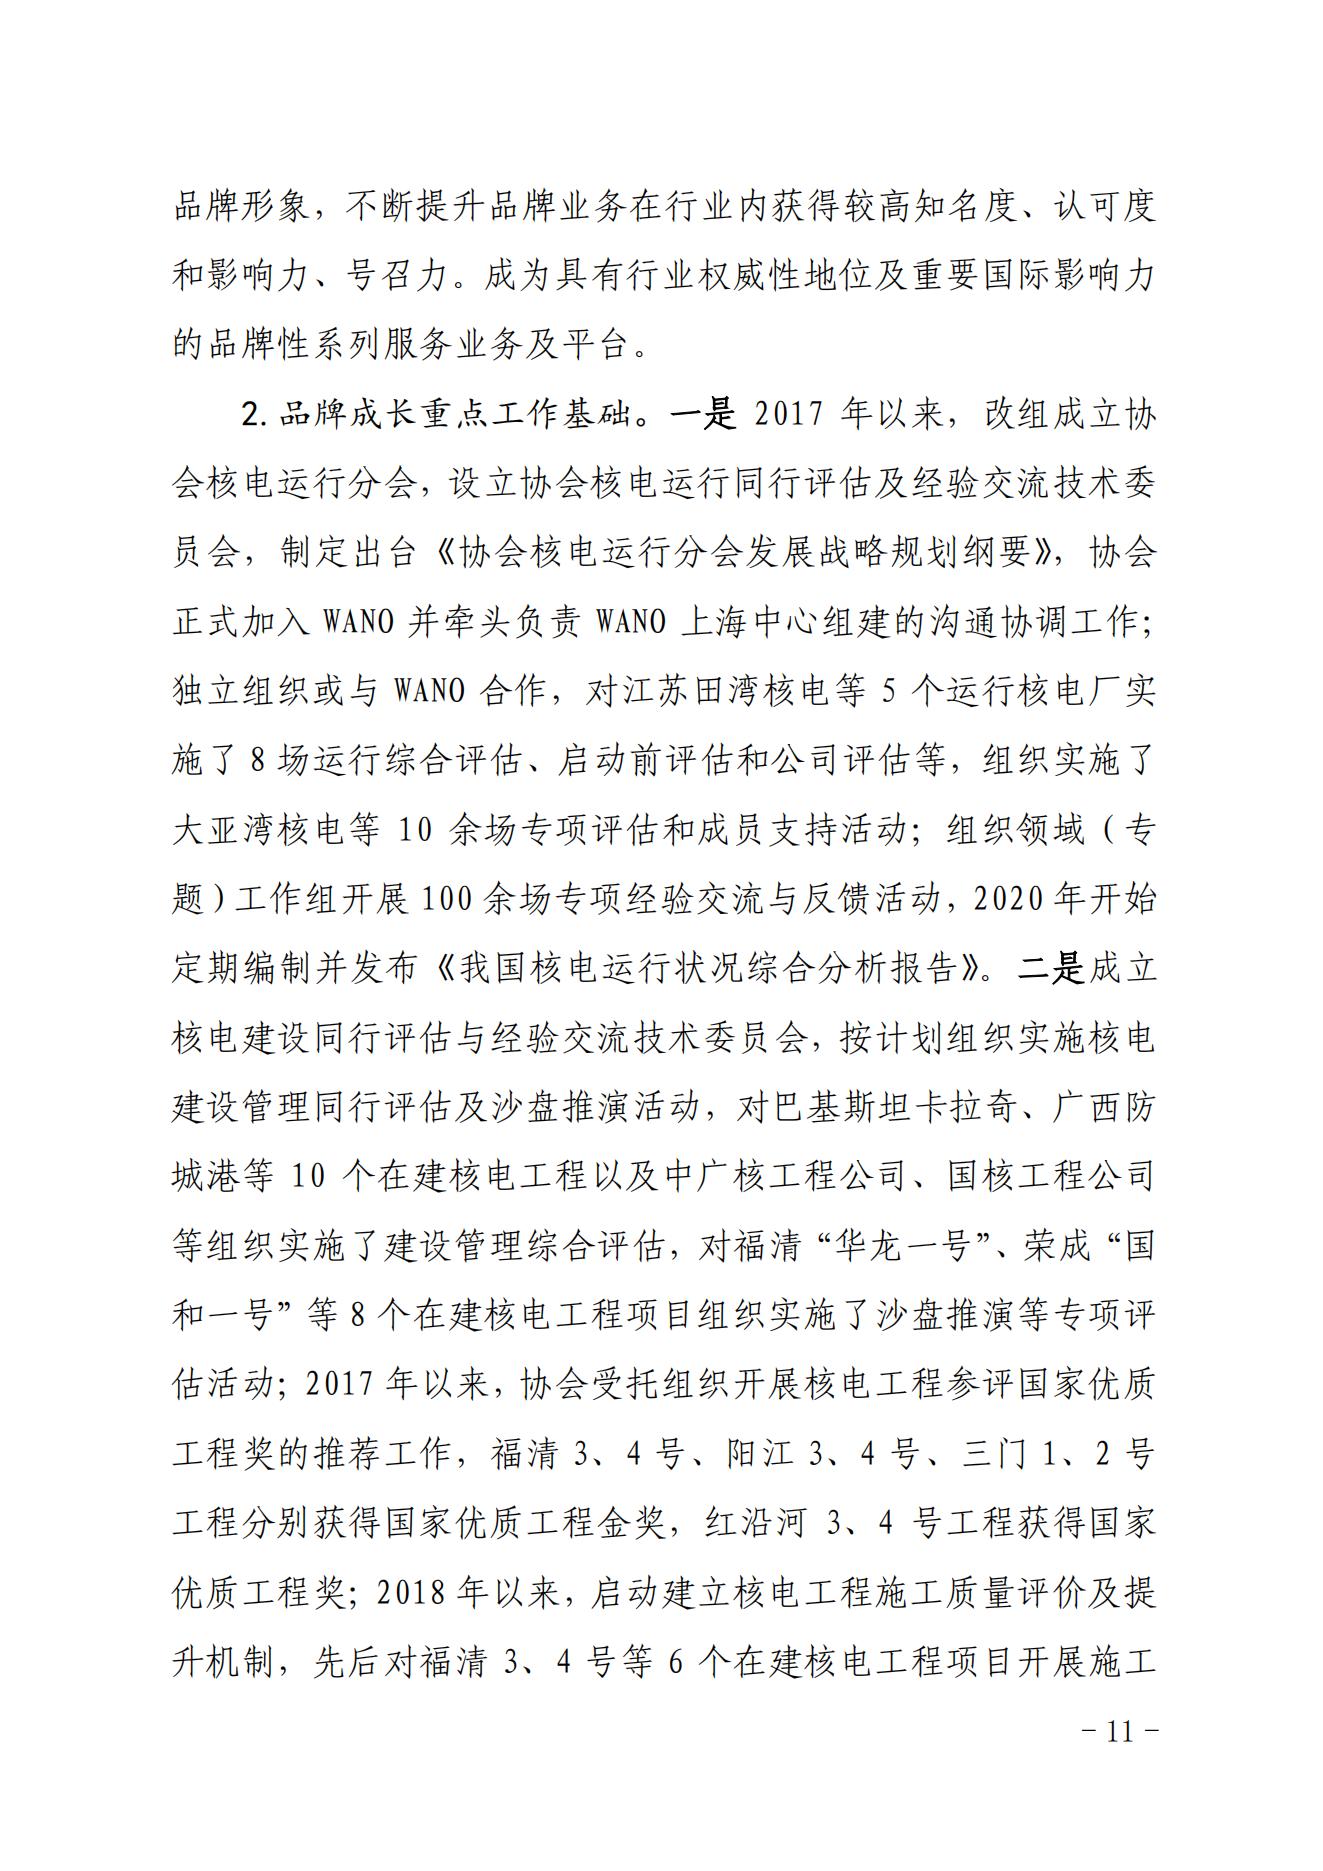 关于印发《中国核能行业协会“品牌协会成长计划”实施方案》的通知_10.jpg